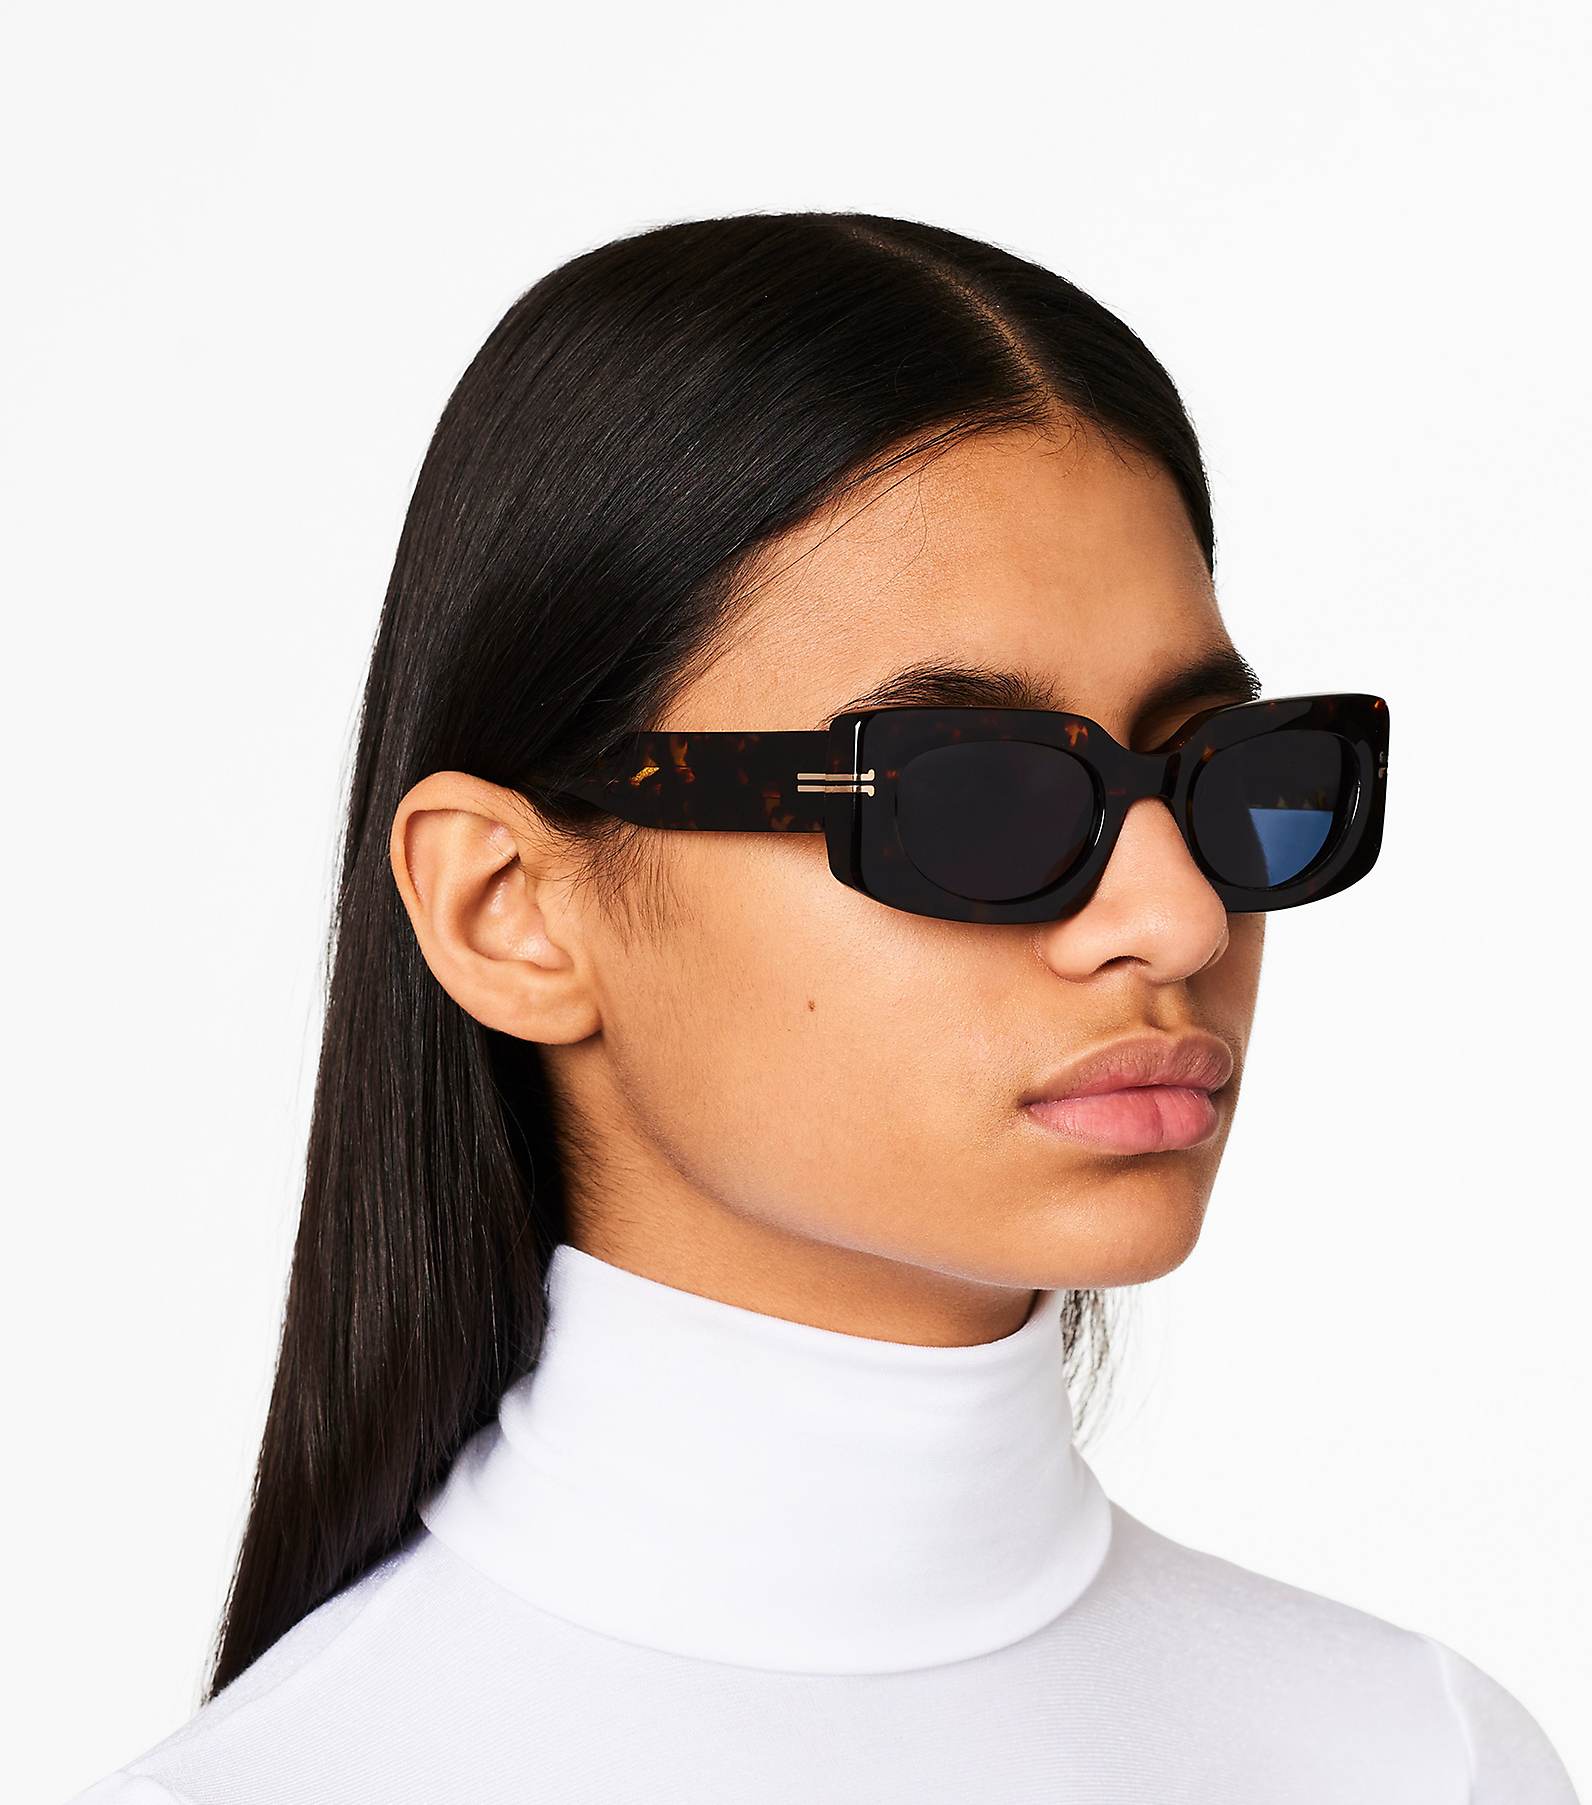 Women's Small Rectangle 'Orange Pearl' Plastic Sunglasses